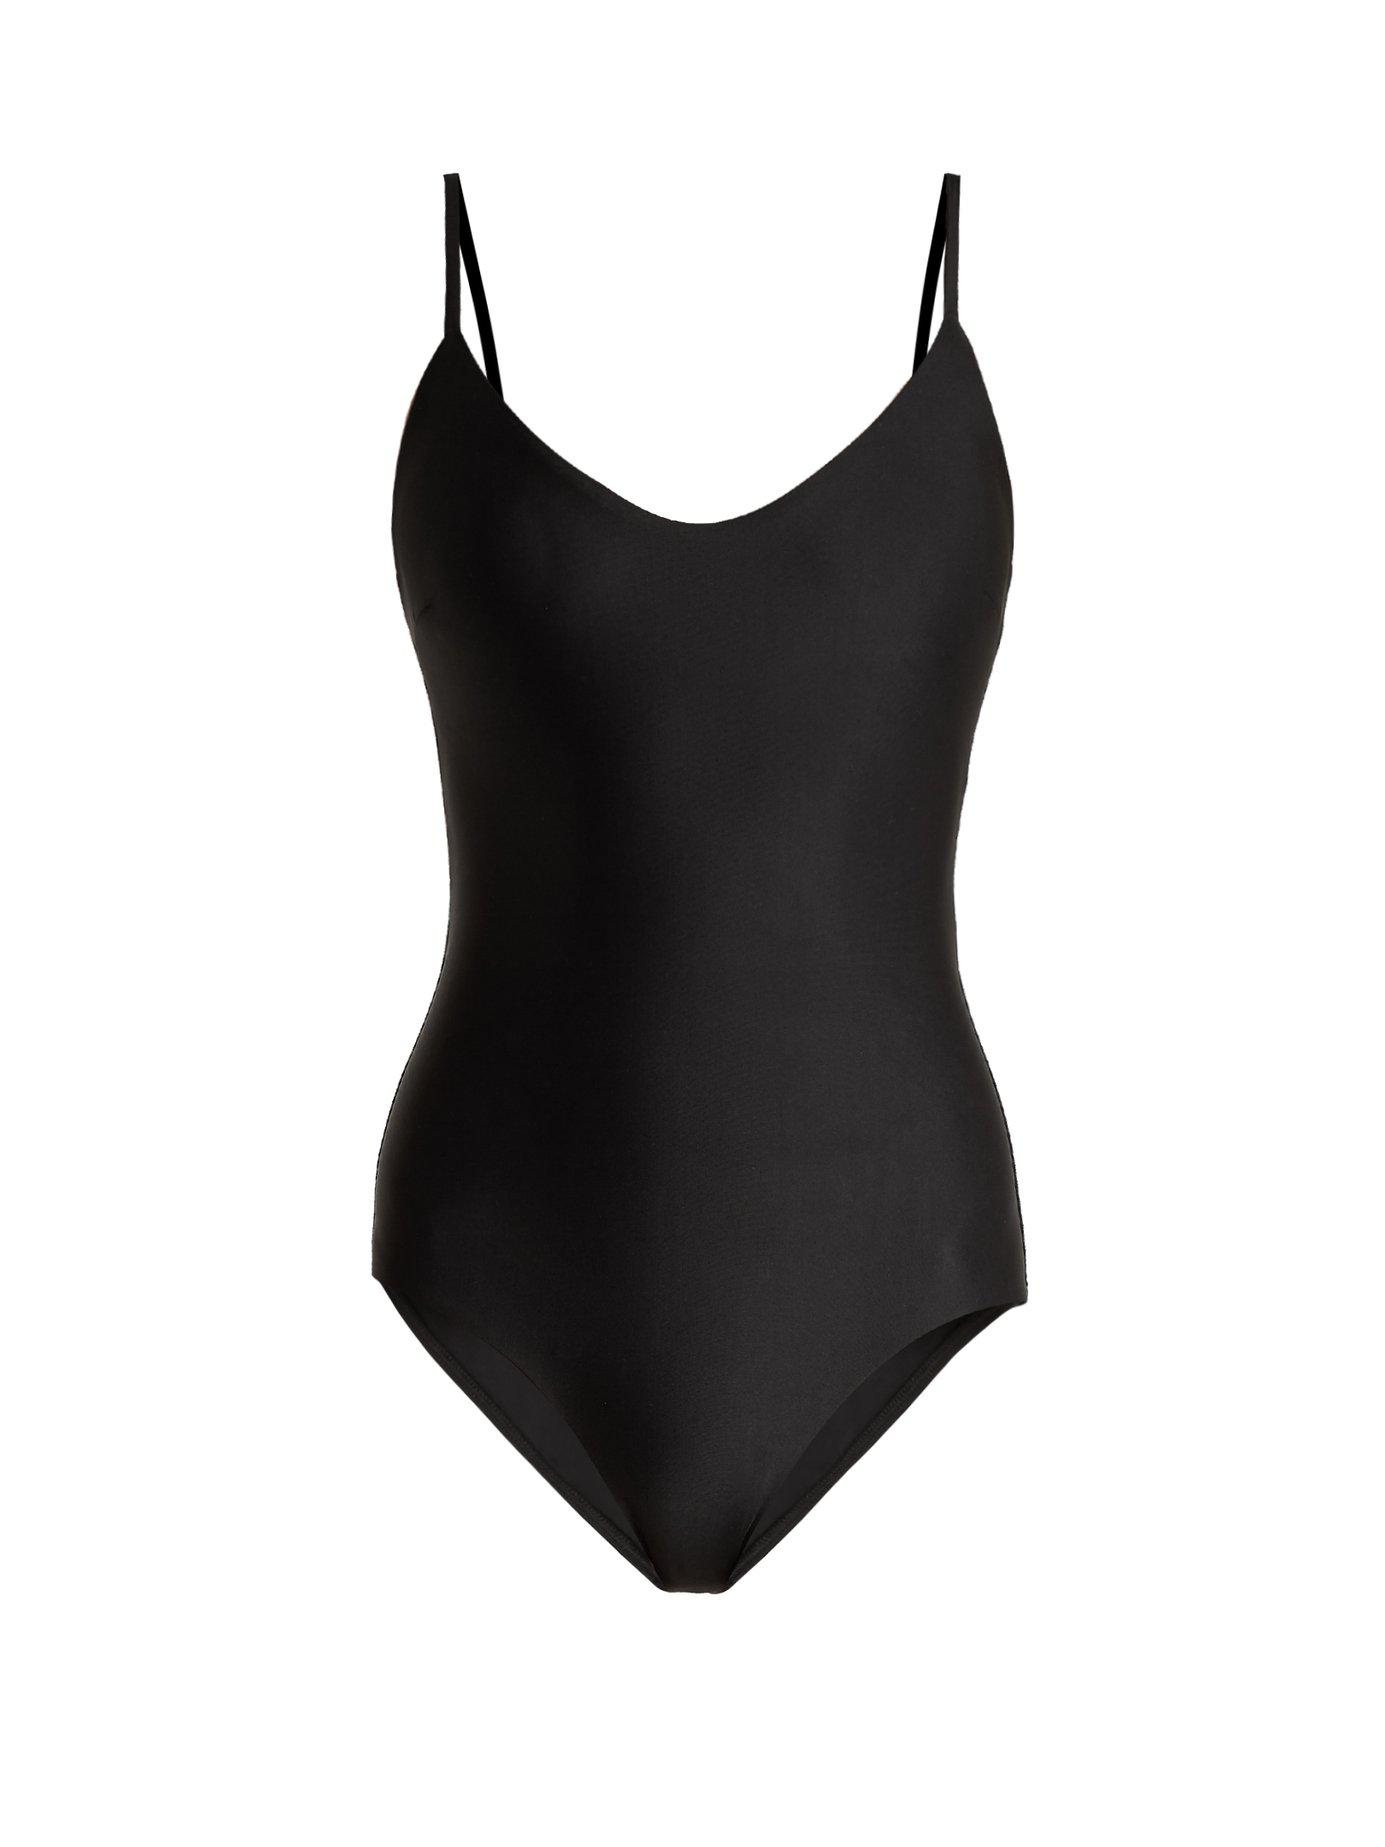 Lyst - Matteau The Scoop Swimsuit in Black